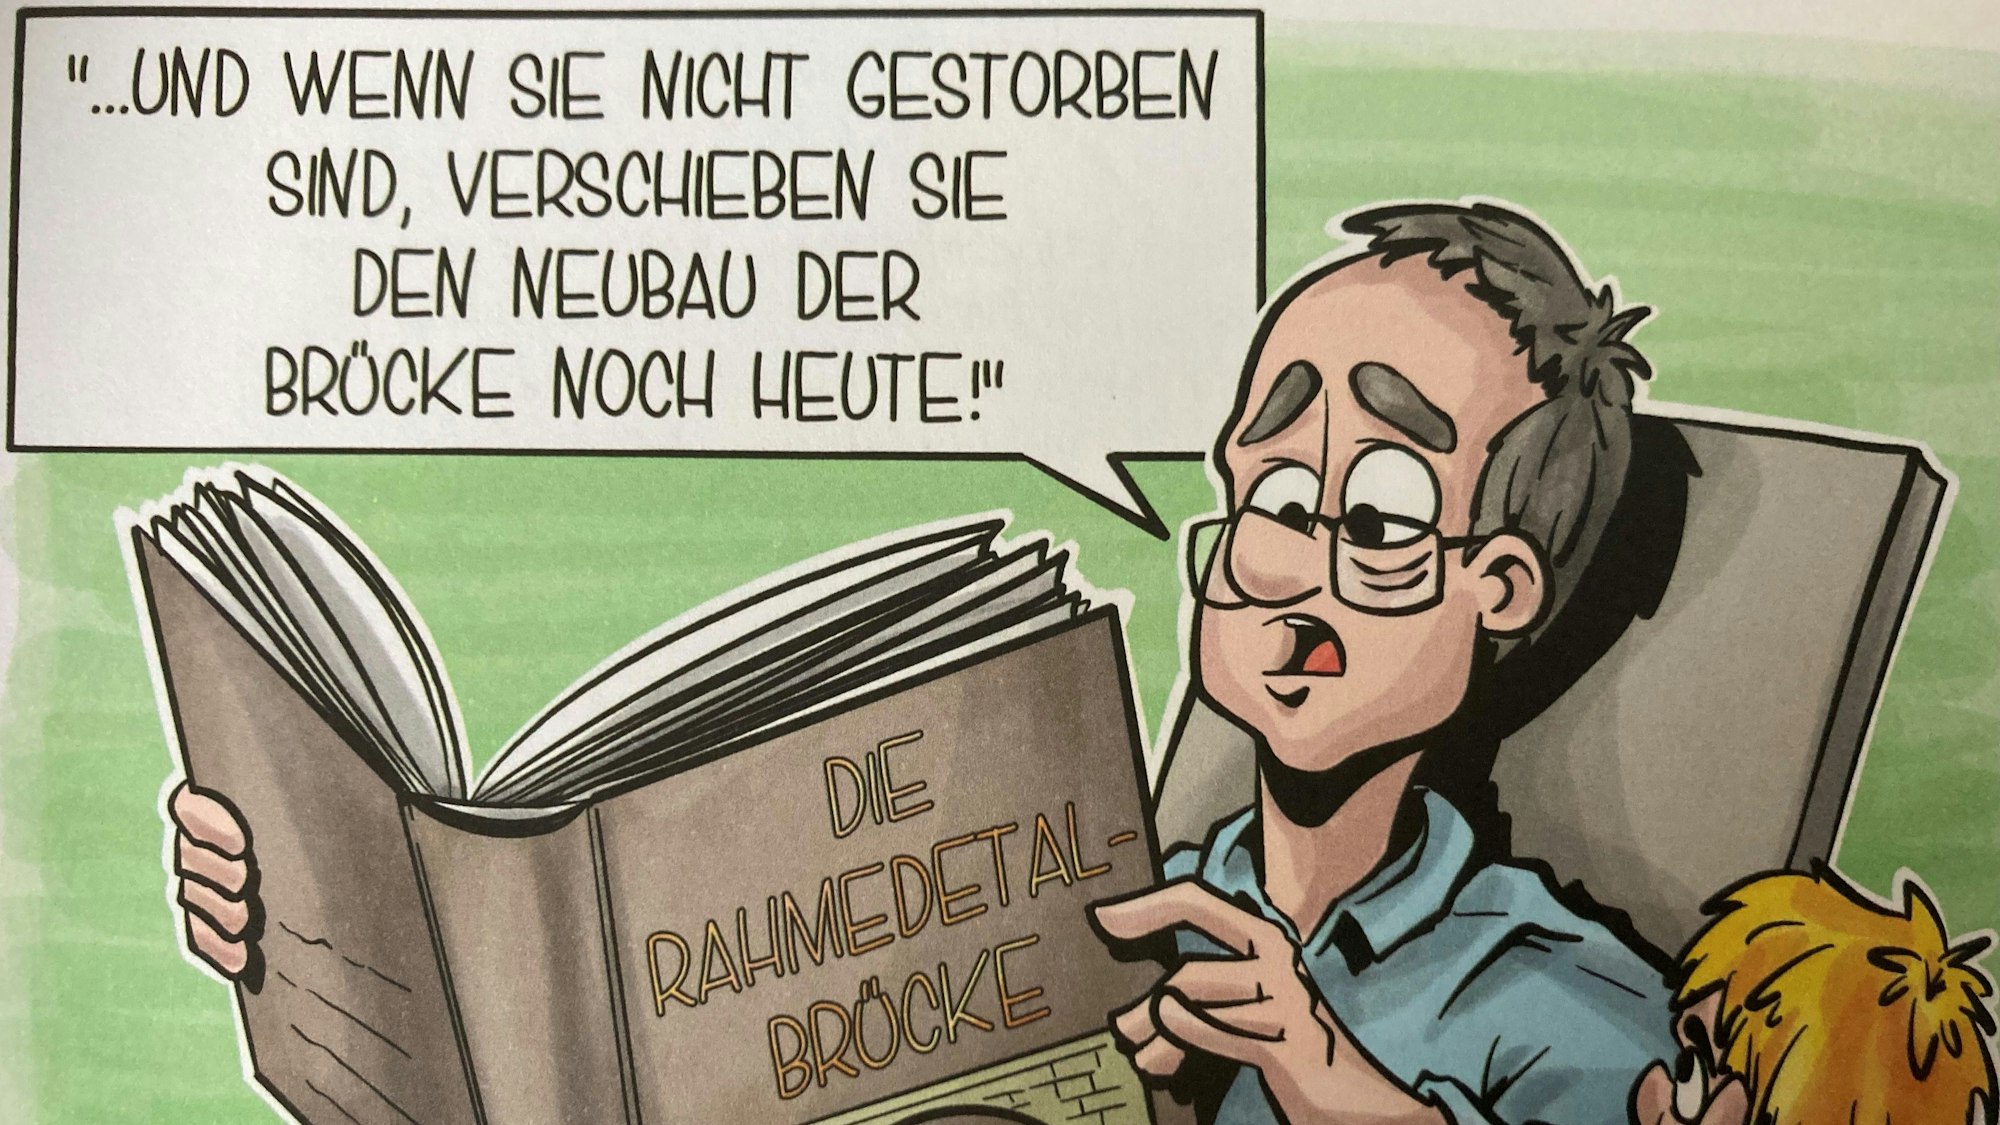 Karikatur aus Broschüre der SPD: Ein Mann liest aus einme dicken Märchenbuch mit dem Titel "Die Rahmedetalbrücke" vor und sagt: "Und wenn sie nicht gestorben sind, verschieben sie den Neubau der Brücke noch heute."